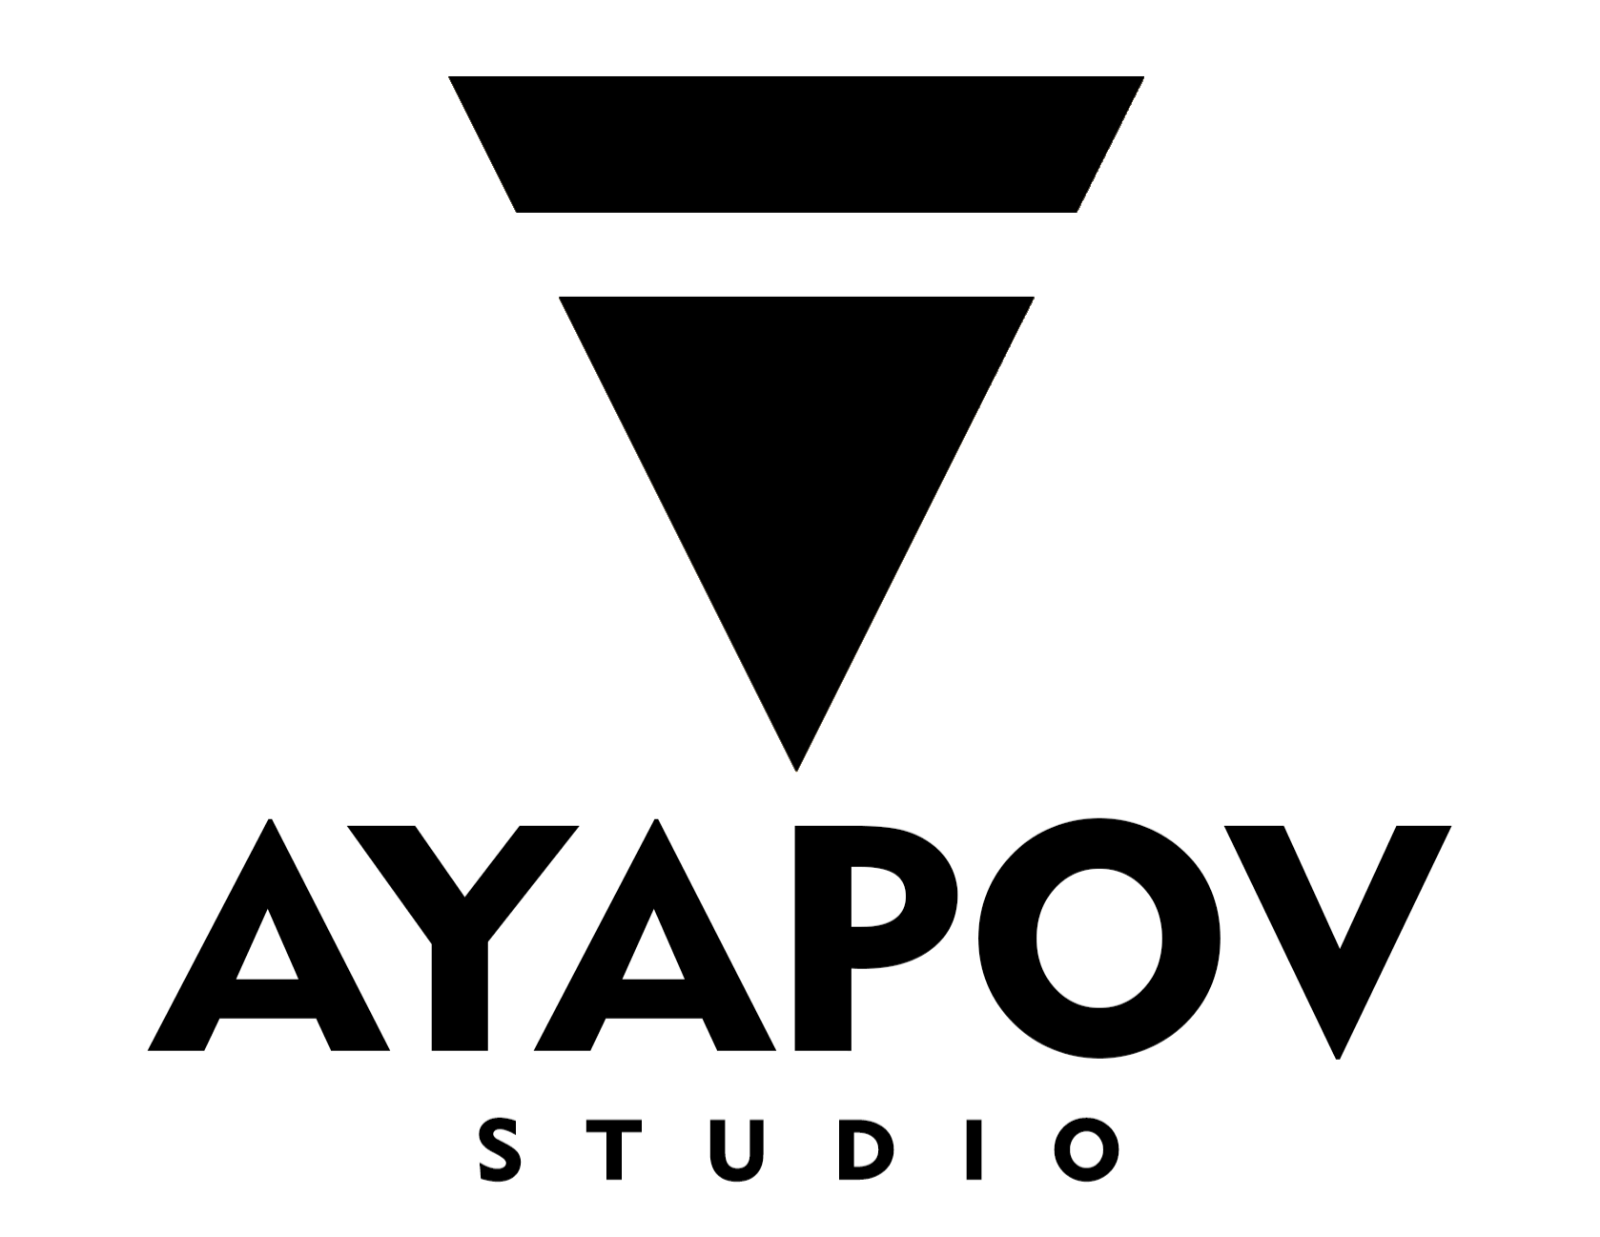 Valery Ayapov Studio